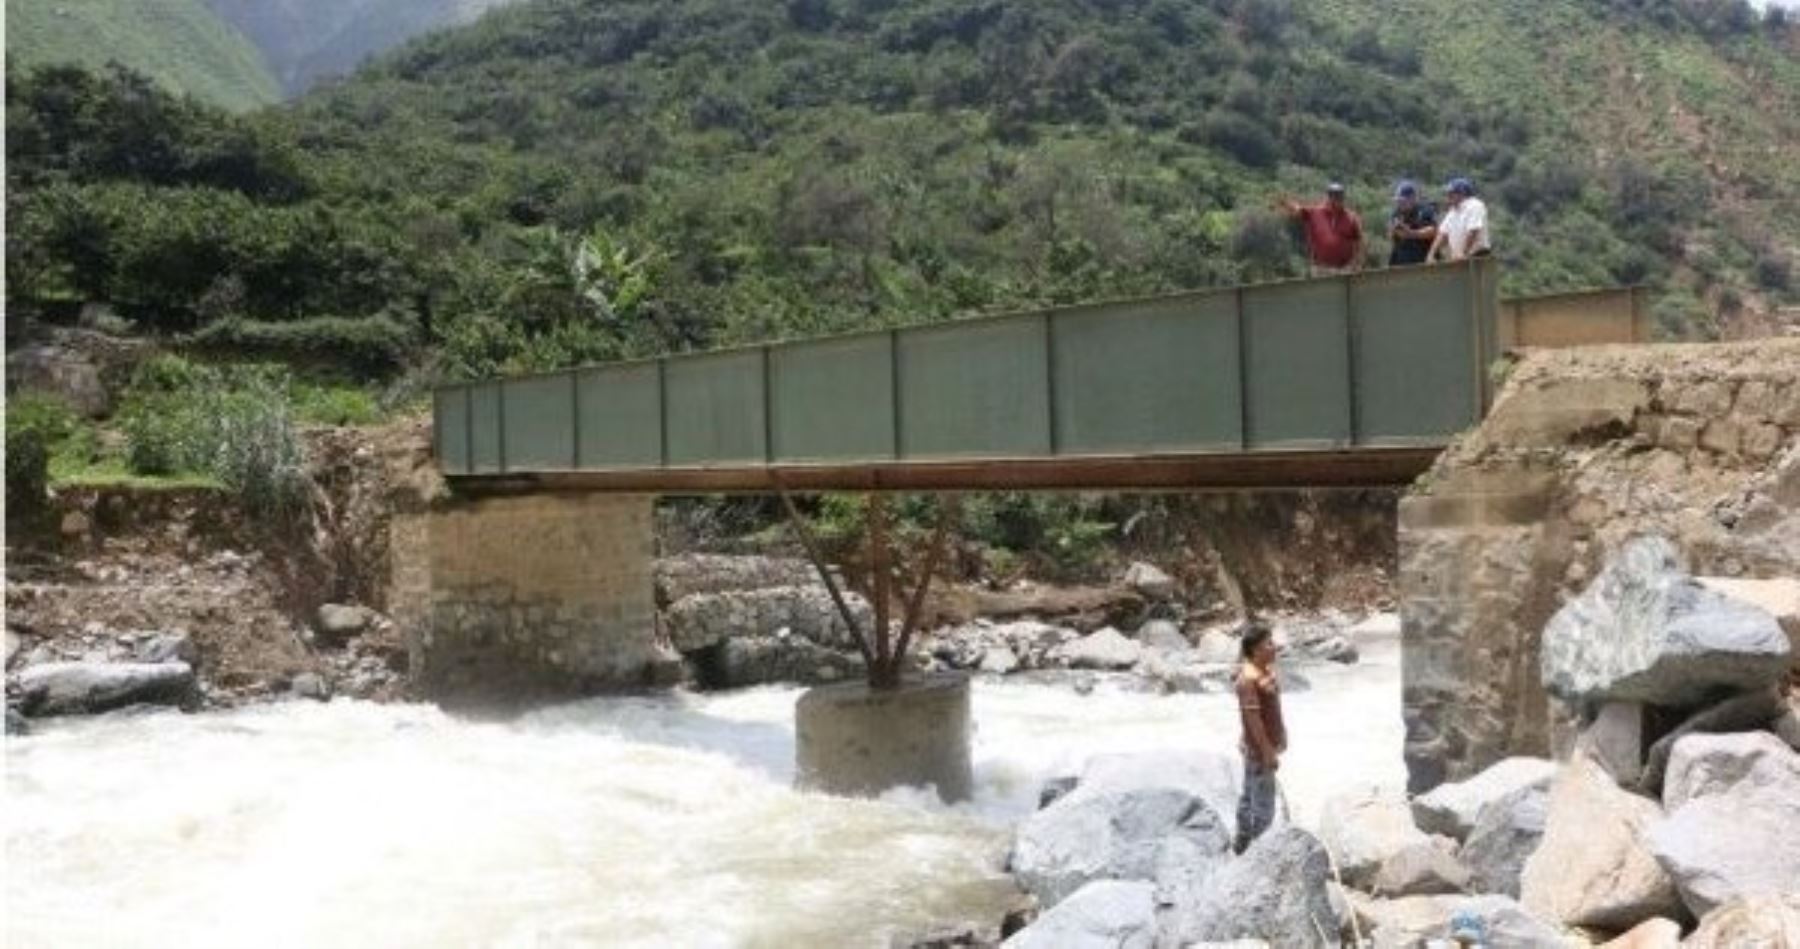 El gobierno regional de Lima intervendrá frente al peligro de colapso del puente Verde que une el distrito de Santa Eulalia con la localidad de San Pedro de Casta, en la provincia de Huarochirí, debido al incremento del caudal del río Santa Eulalia, afluente del río Rímac.